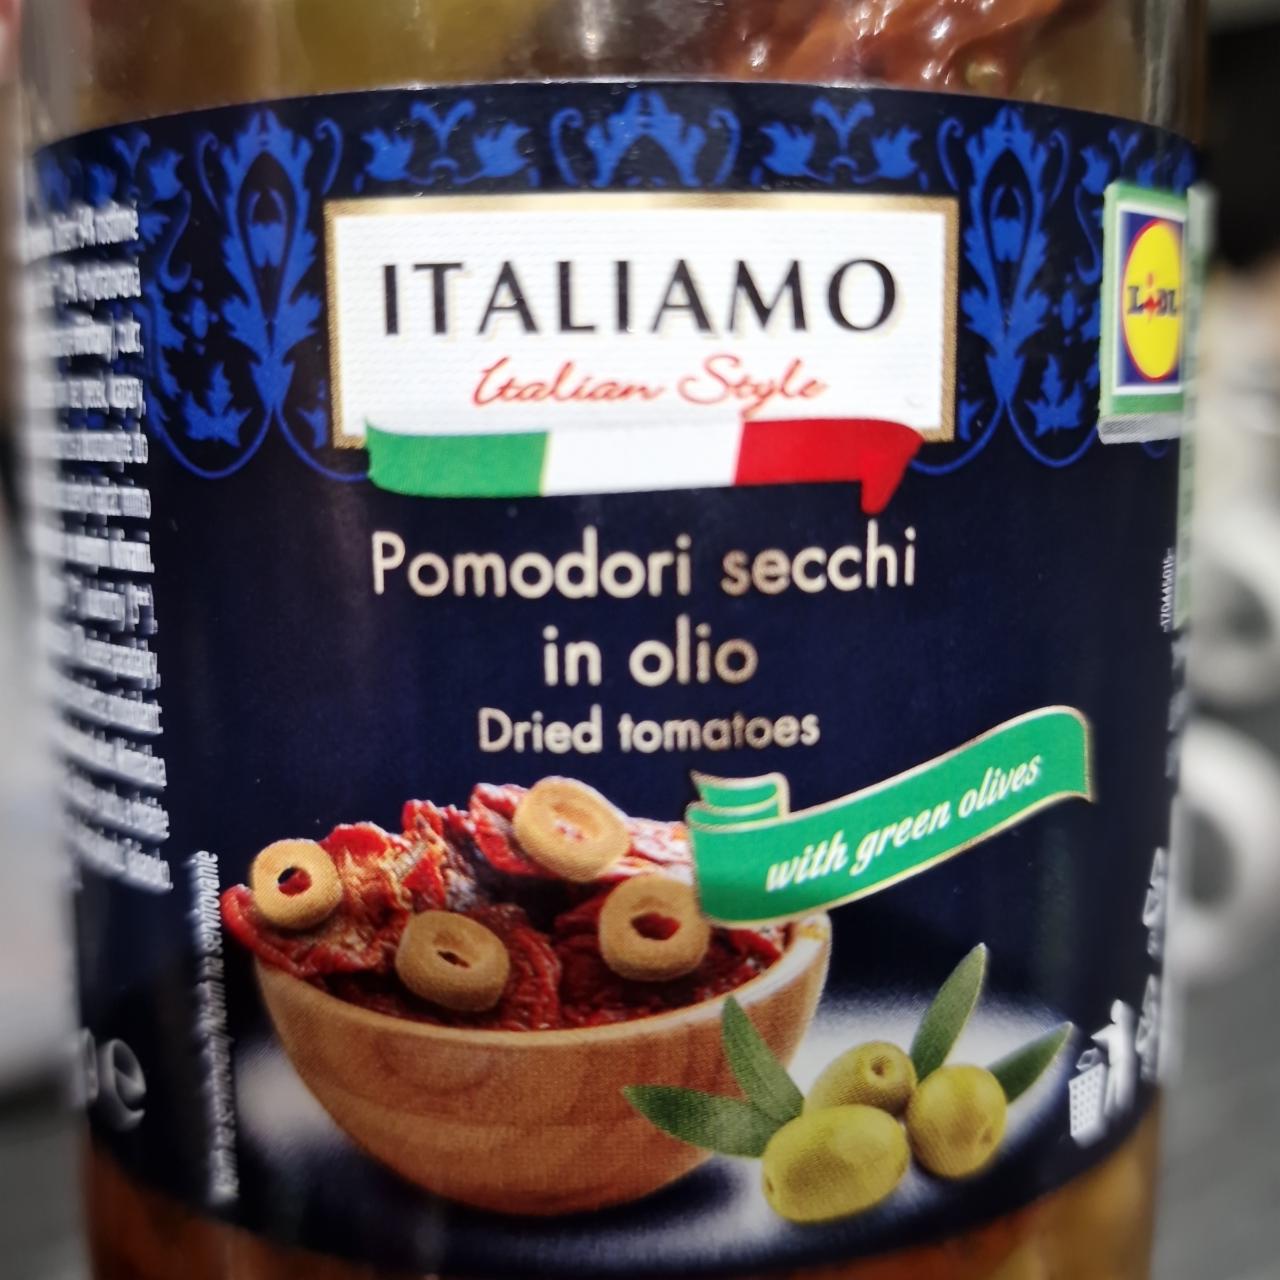 Fotografie - Pomodori secchi in olio with green olives Italiamo